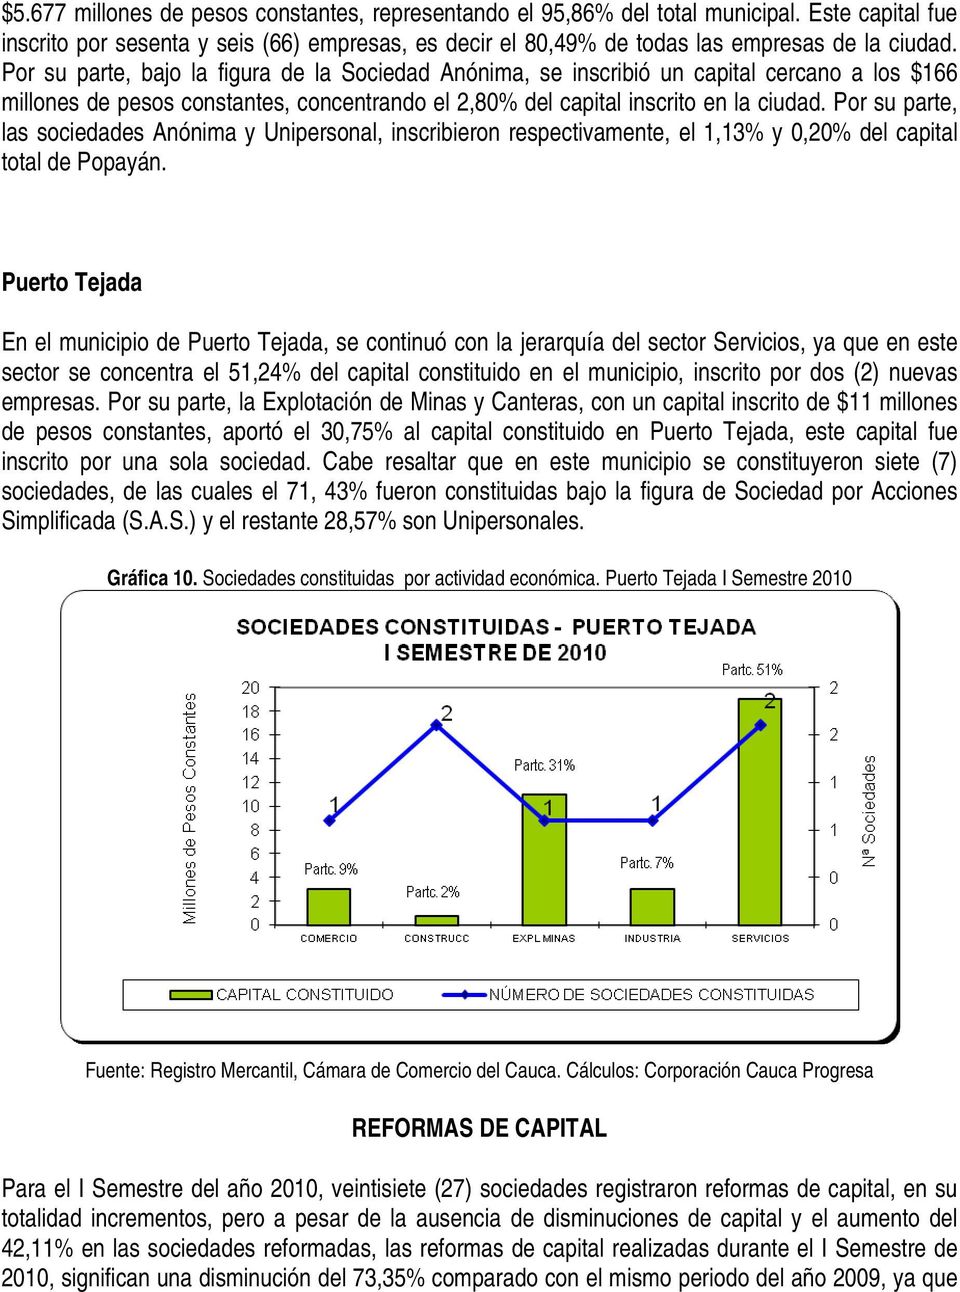 Por su parte, las sociedades Anónima y Unipersonal, inscribieron respectivamente, el 1,13% y 0,20% del capital total de Popayán.